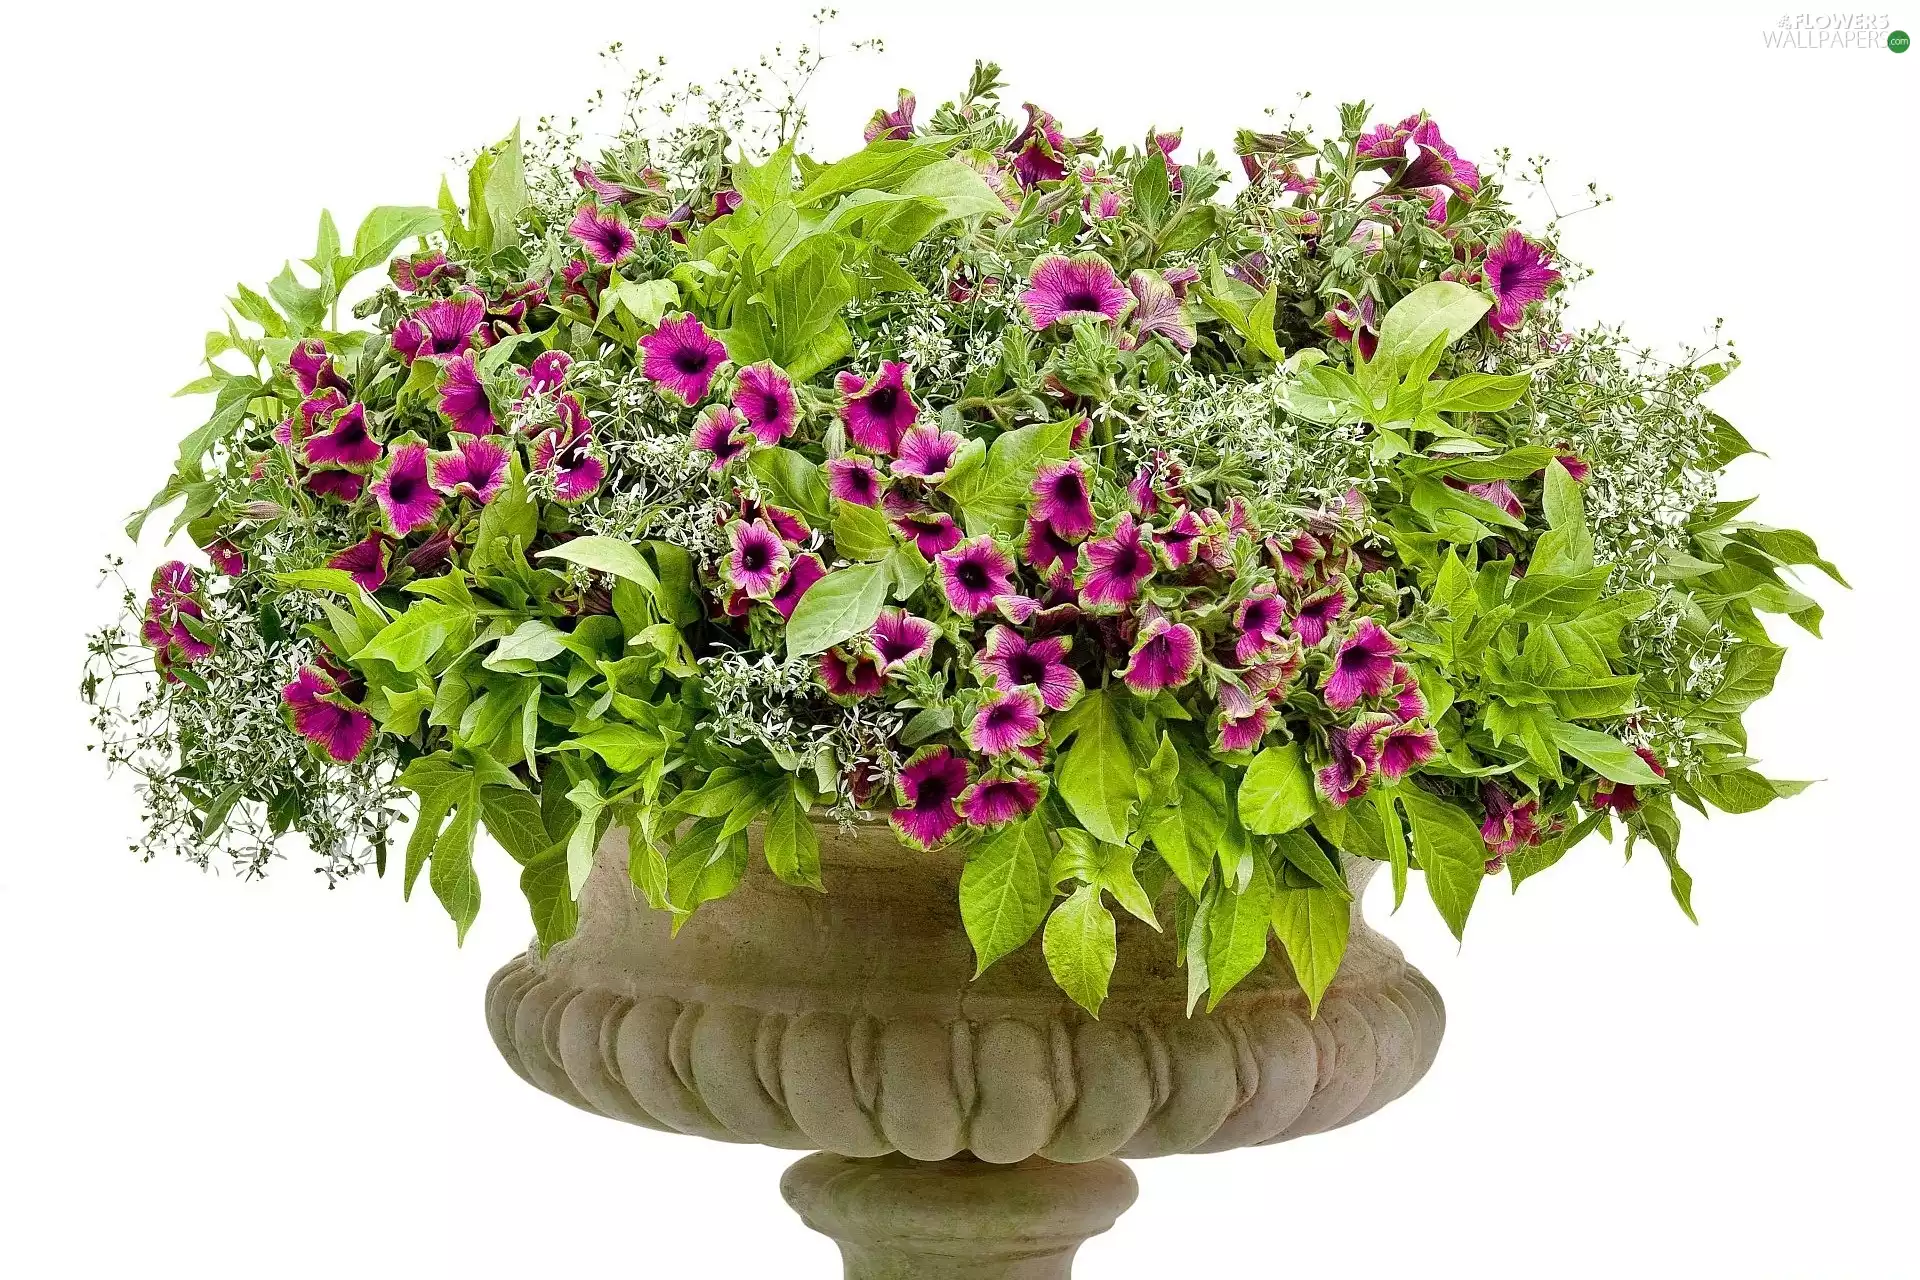 petunias, bowl, purple